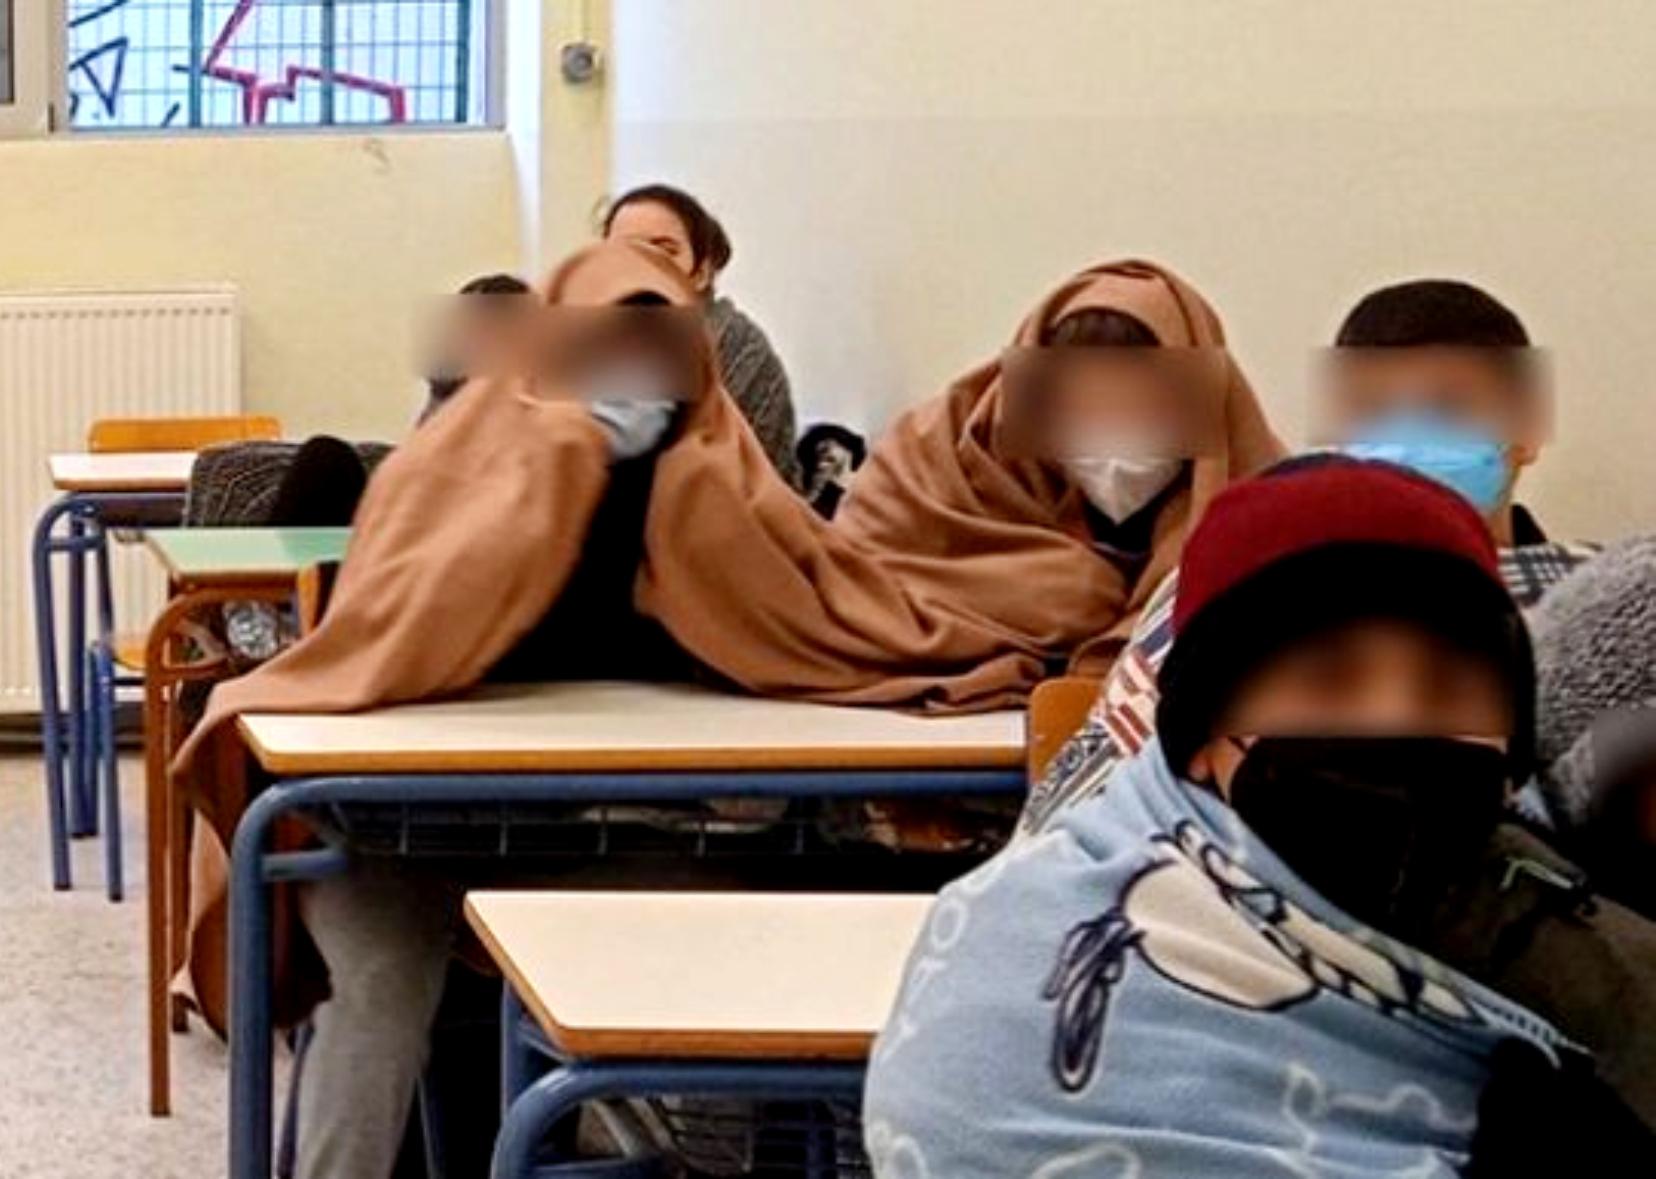 Σχολεία  – Συναγερμός  : Φόβοι για μάθημα σε κρύες τάξεις